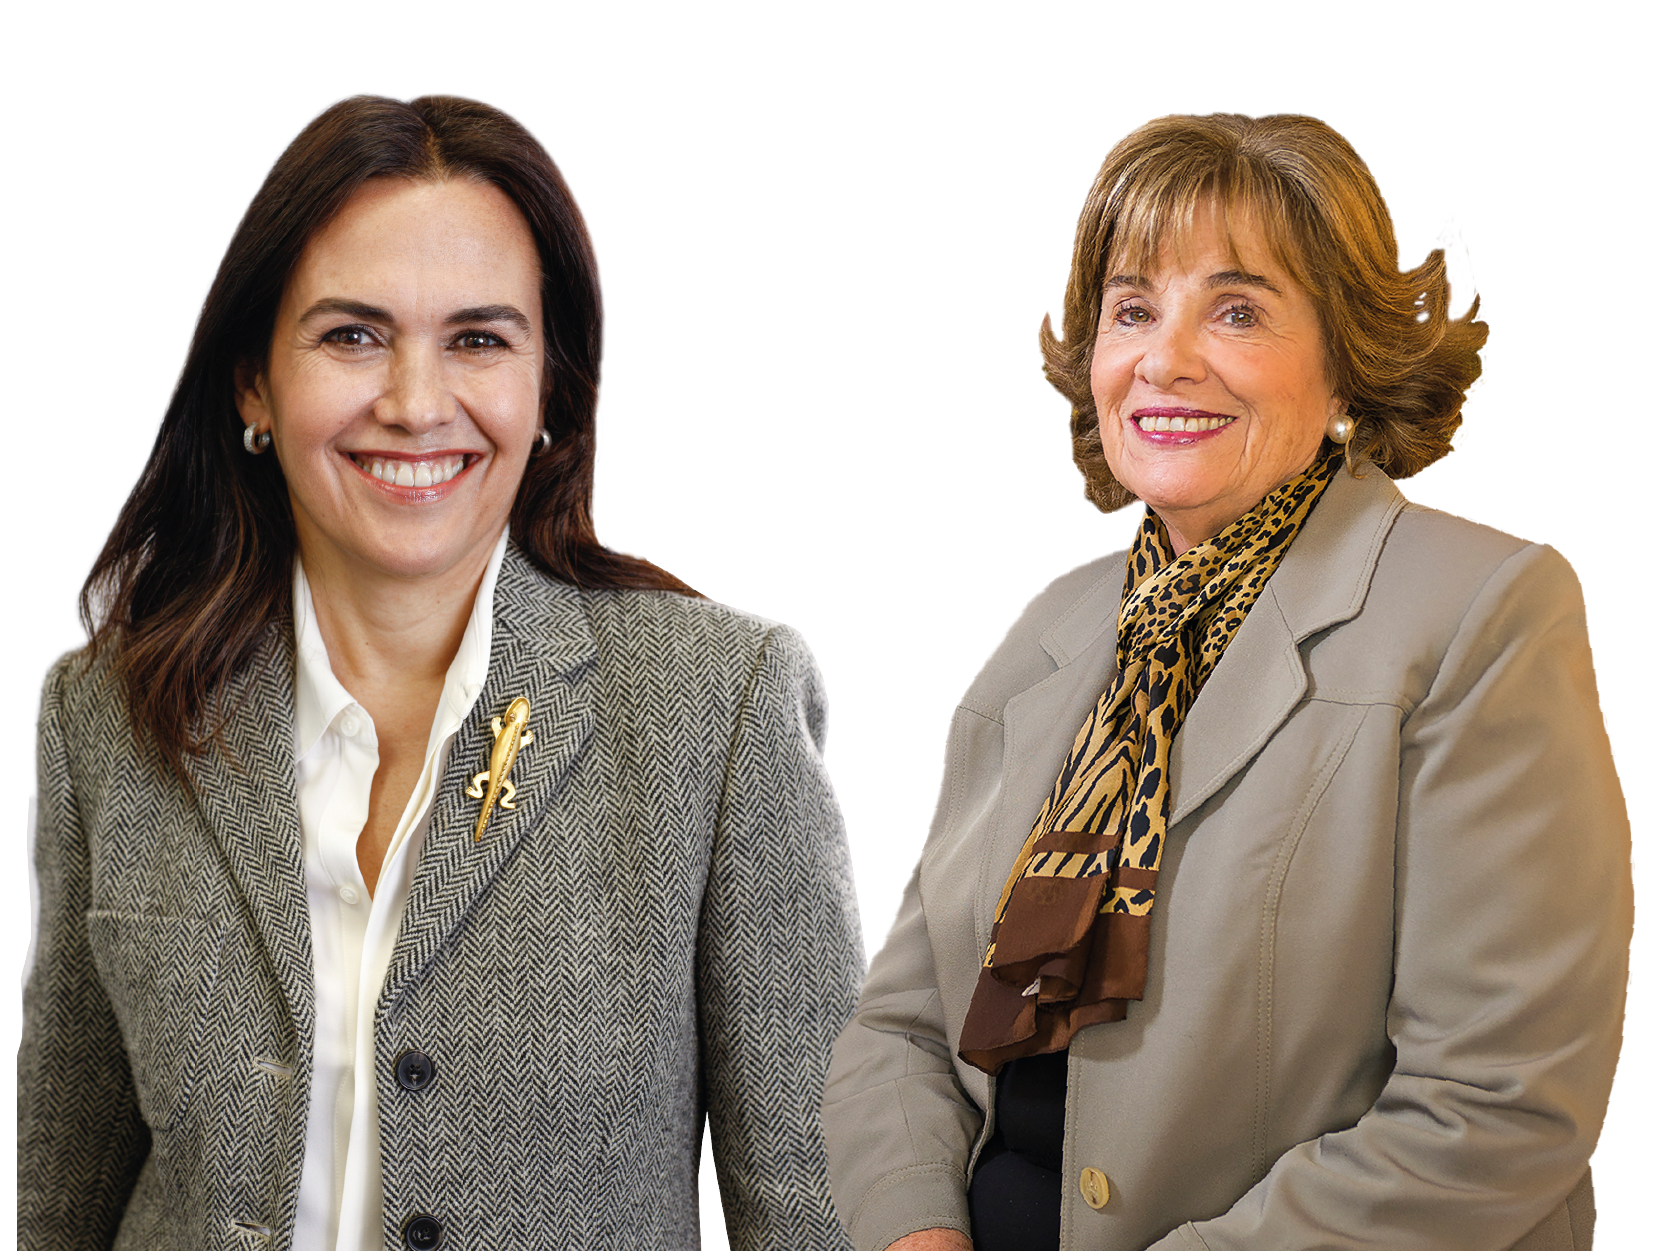 Vitamayor reúne a alcaldesa Camila Merino y María Teresa Serrano en: “¿Qué quieren los mayores?”